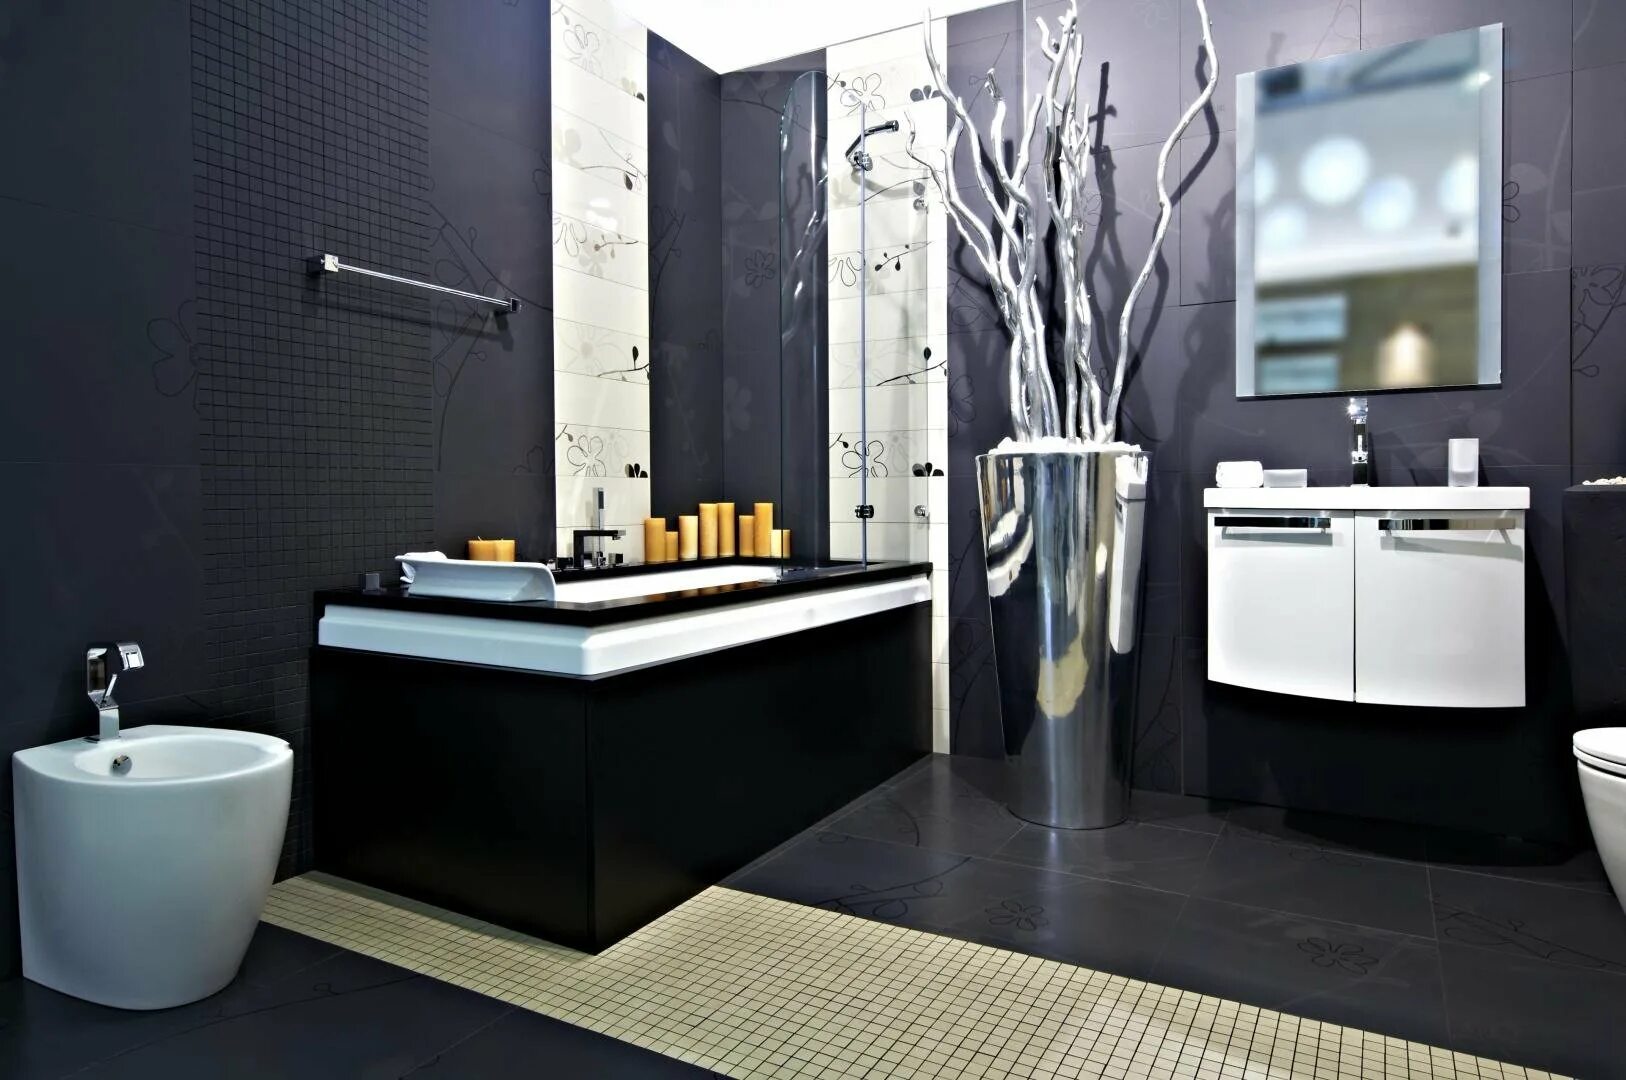 Фото сантехники ванной комнаты. Сантехника в интерьере. Черно белая ванная. Черные Ванные комнаты. Ванная в черно белых тонах.